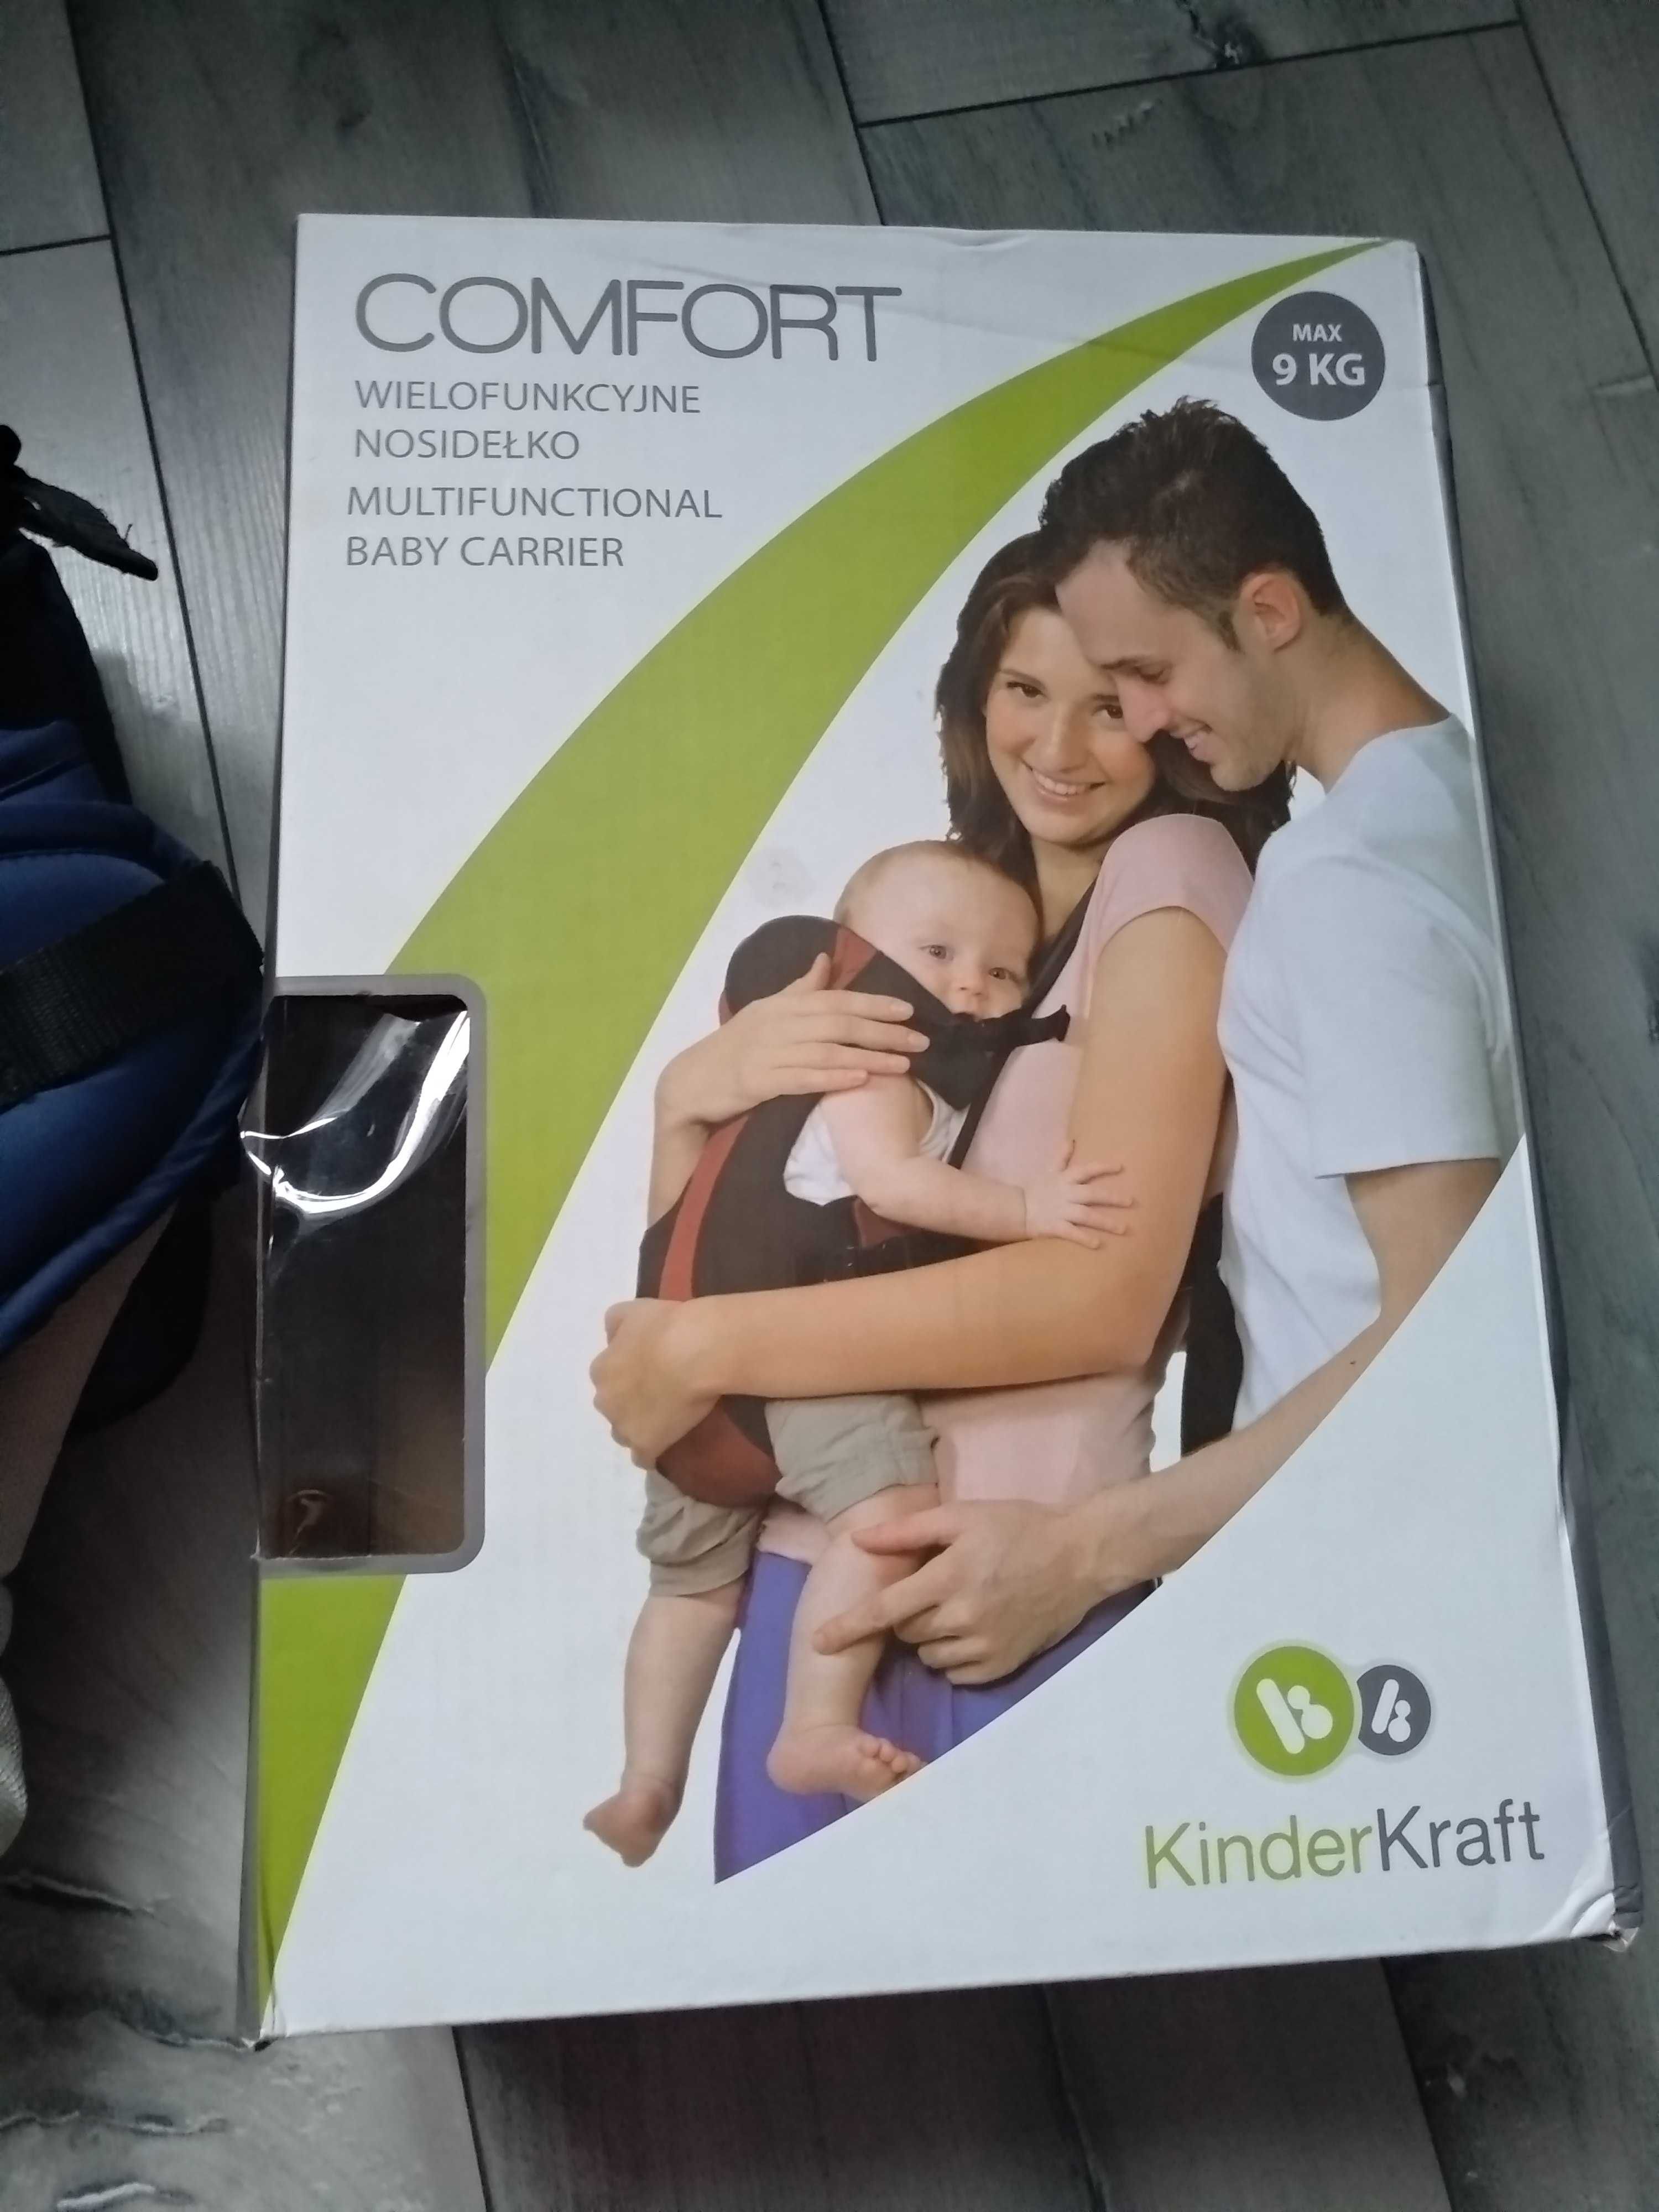 Kinderkraft Comfort nosidełko wielofunkcyjne do 9kg